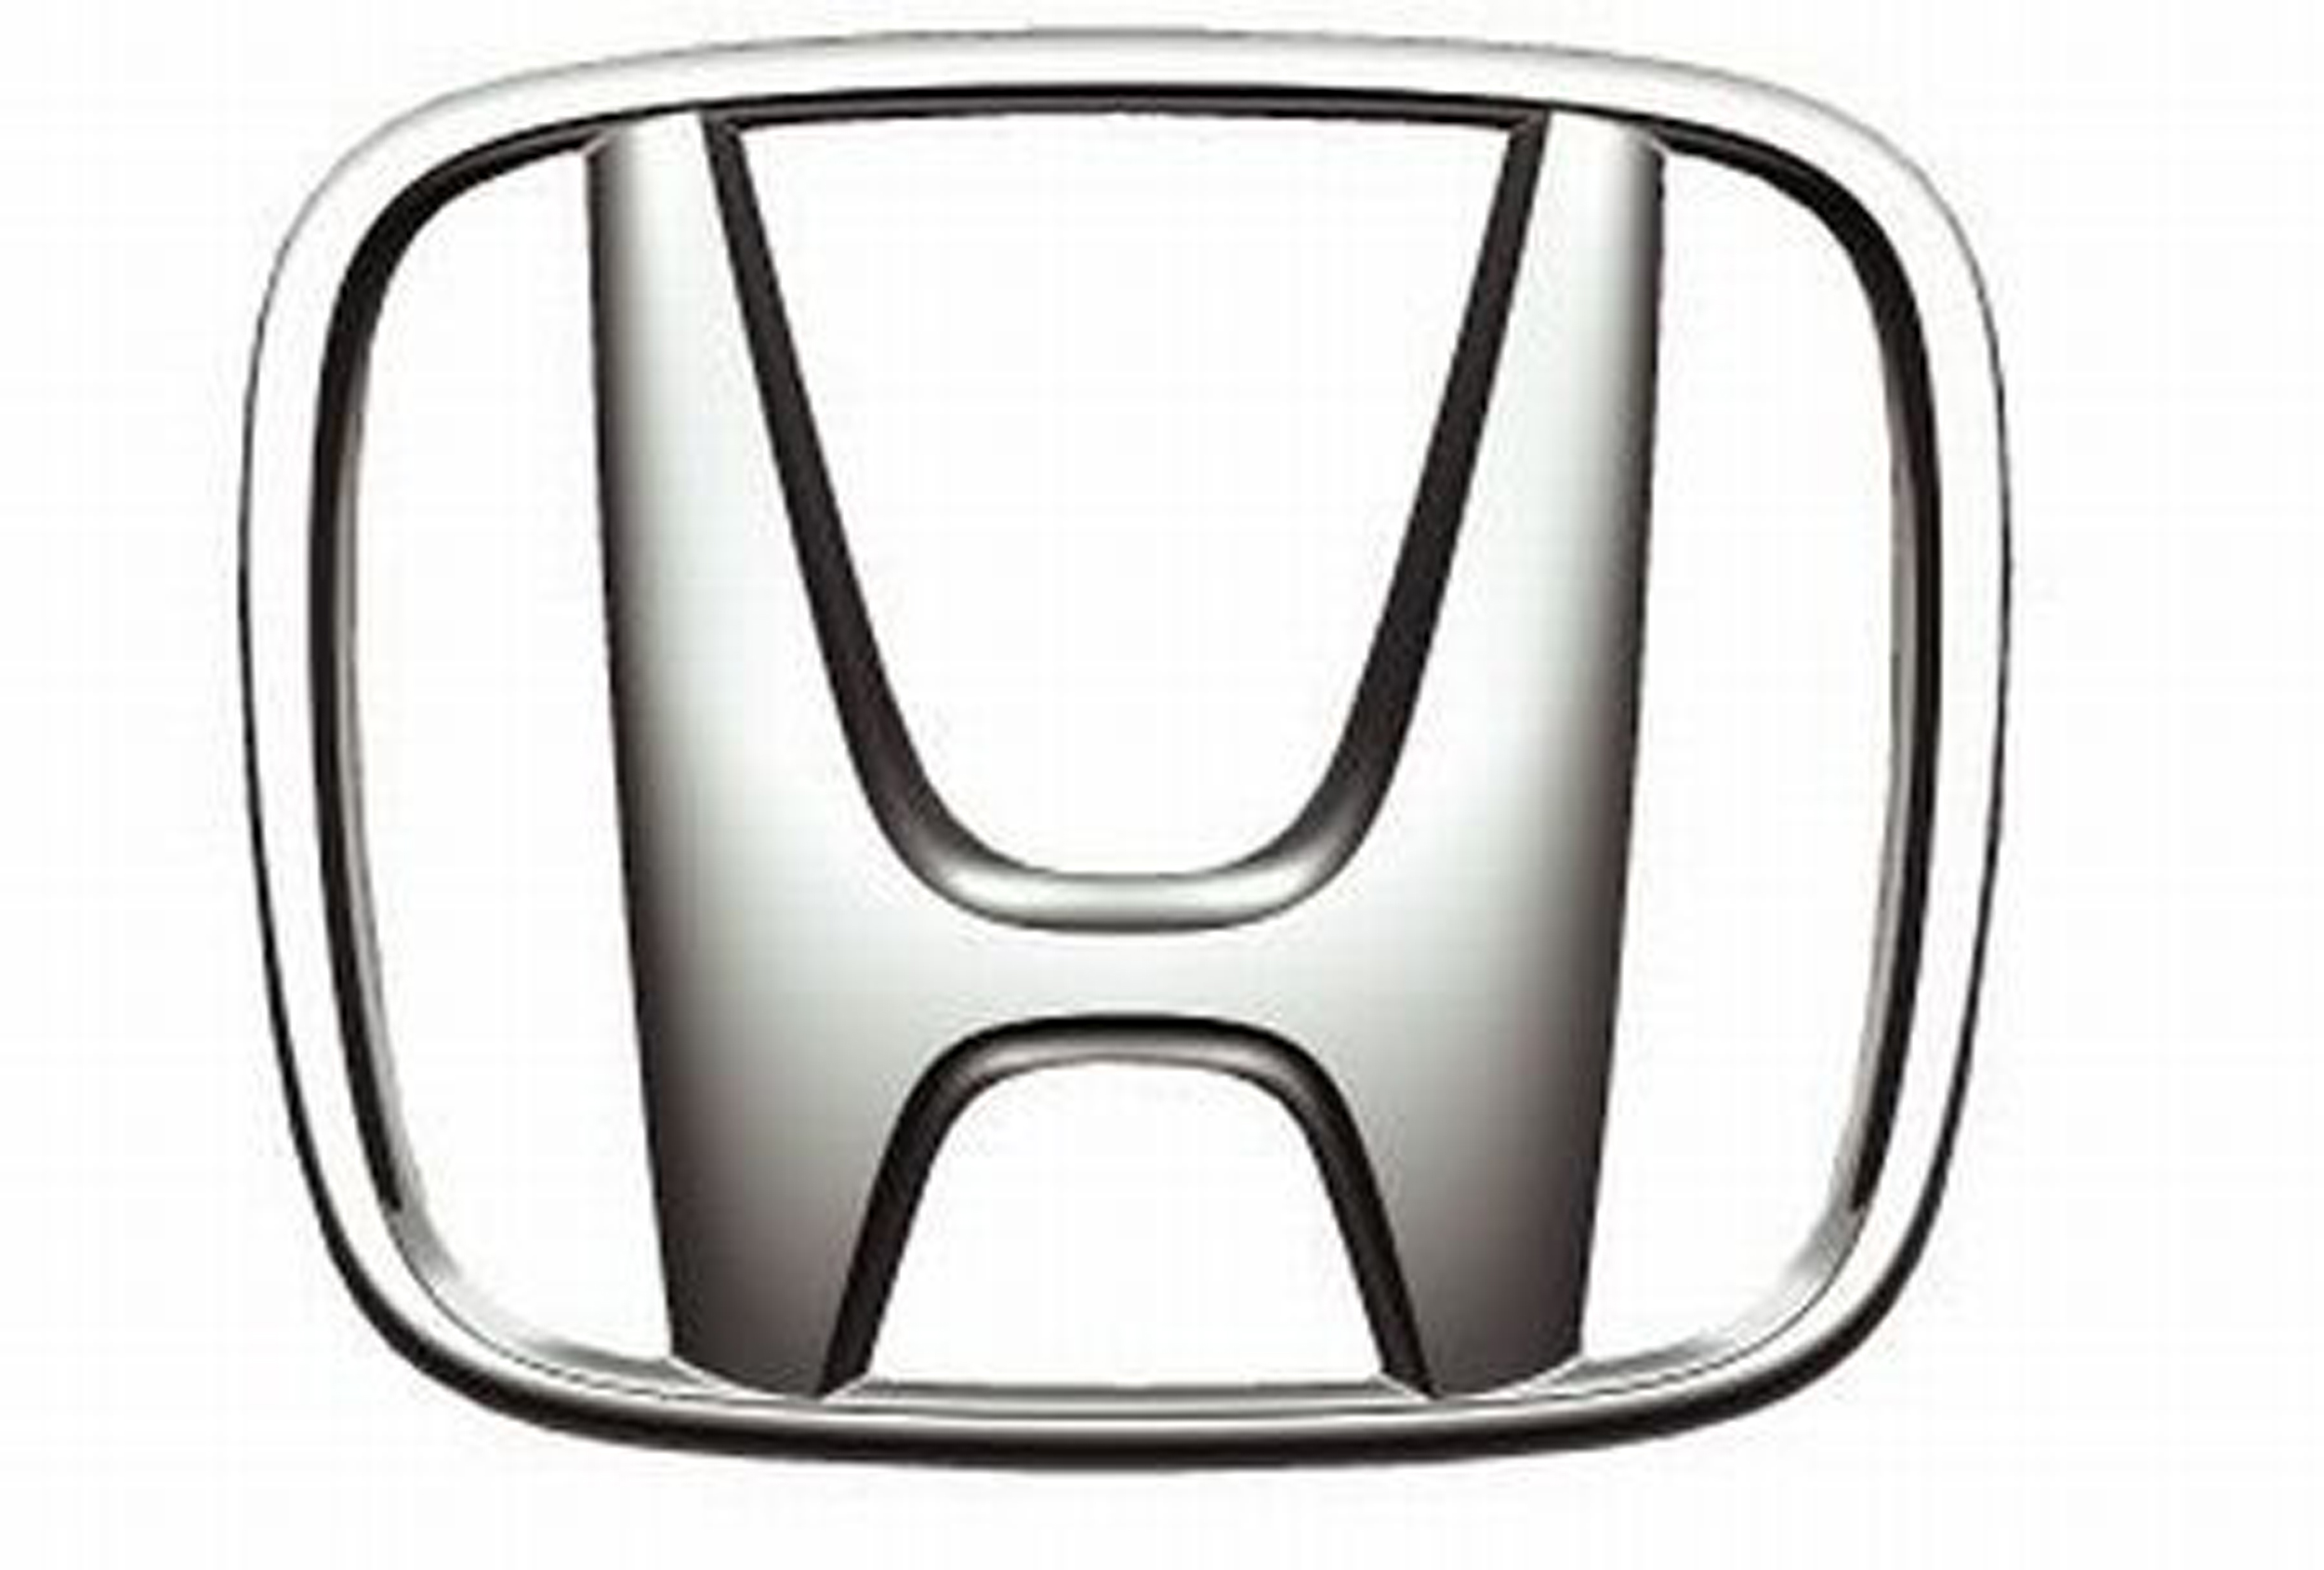 Honda Logos and Symbols